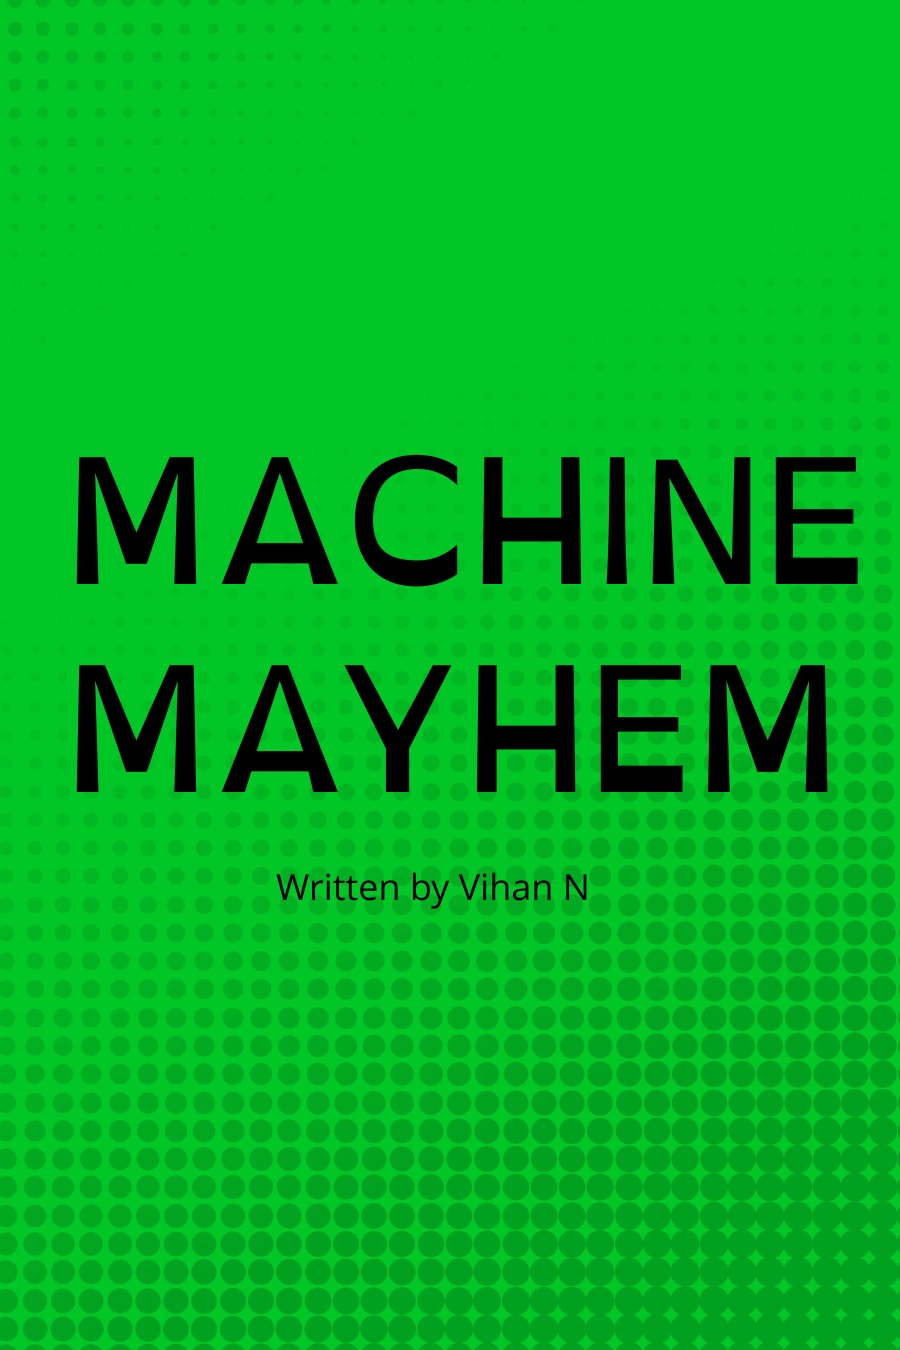 MACHINE MAYHEM by Vihan N